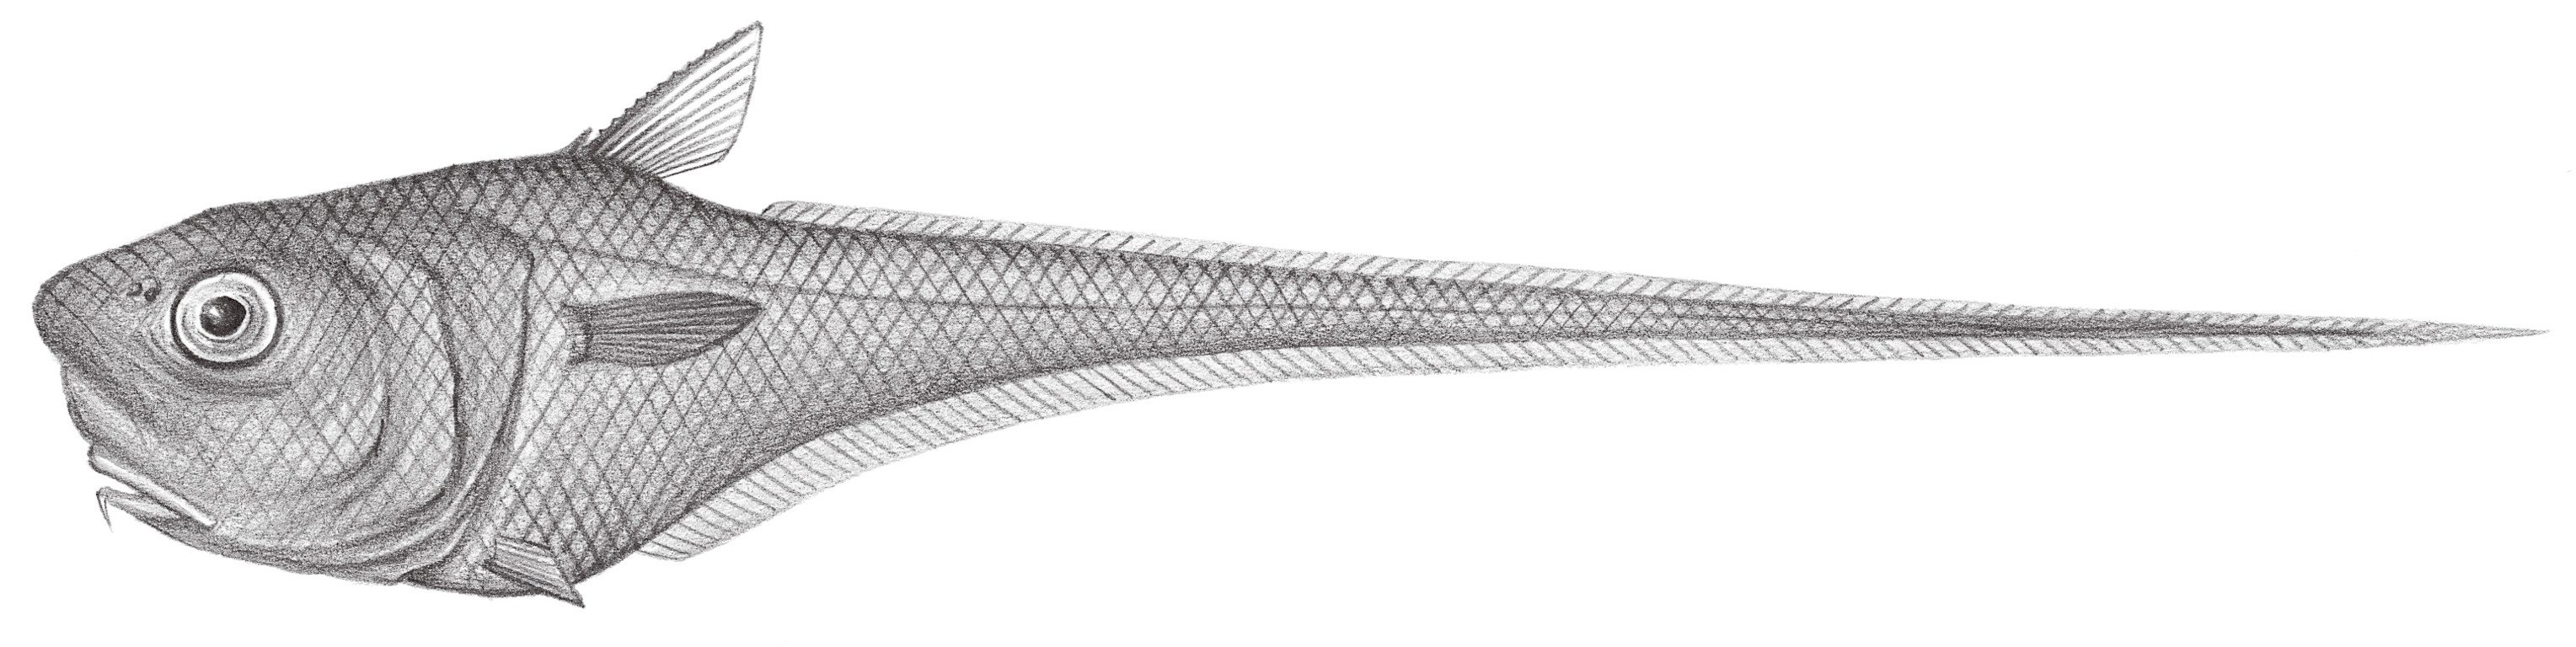 571.	寬吻鯨尾鱈 Cetonurus rubostus Gilbert & Hubbs, 1916